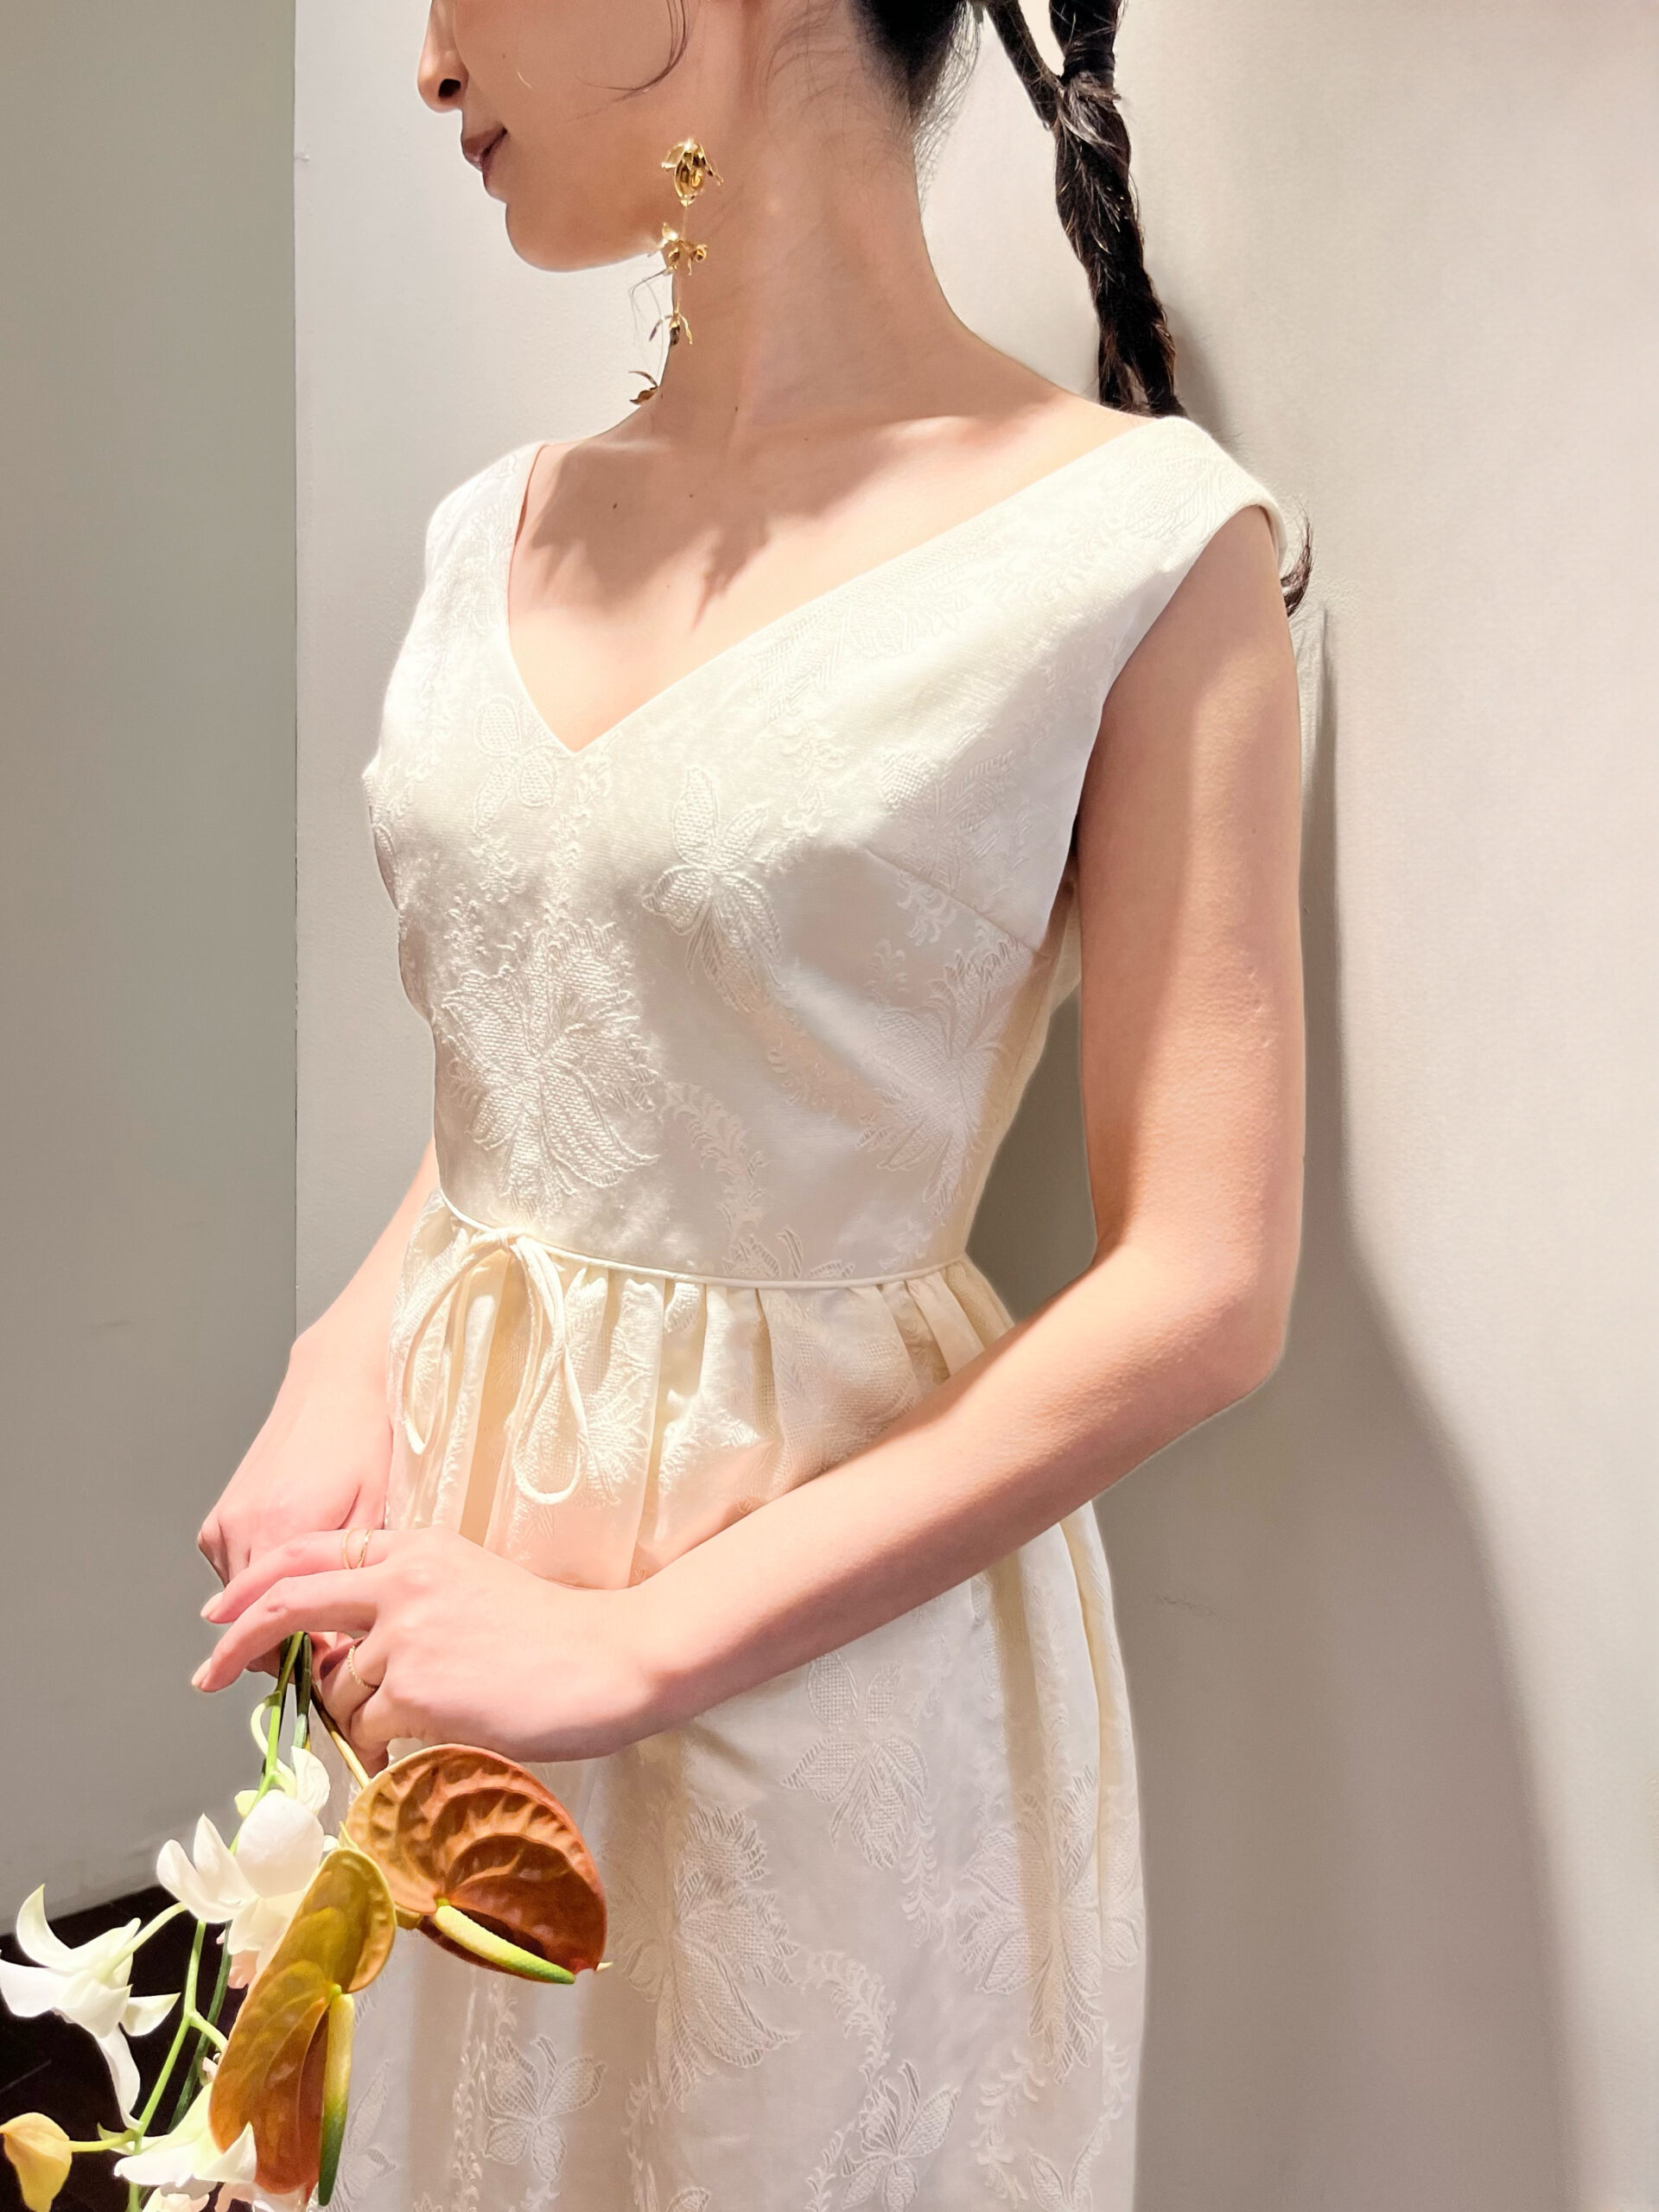 肩付きでリラックス感ありお花の刺繍が映えるマルカリアンのスレンダーラインのウェディングドレスに大人でおしゃれなゴールドのイヤリングを合わせた神戸エリアのおしゃれなプレ花嫁におすすめしたいコーディネートのご紹介